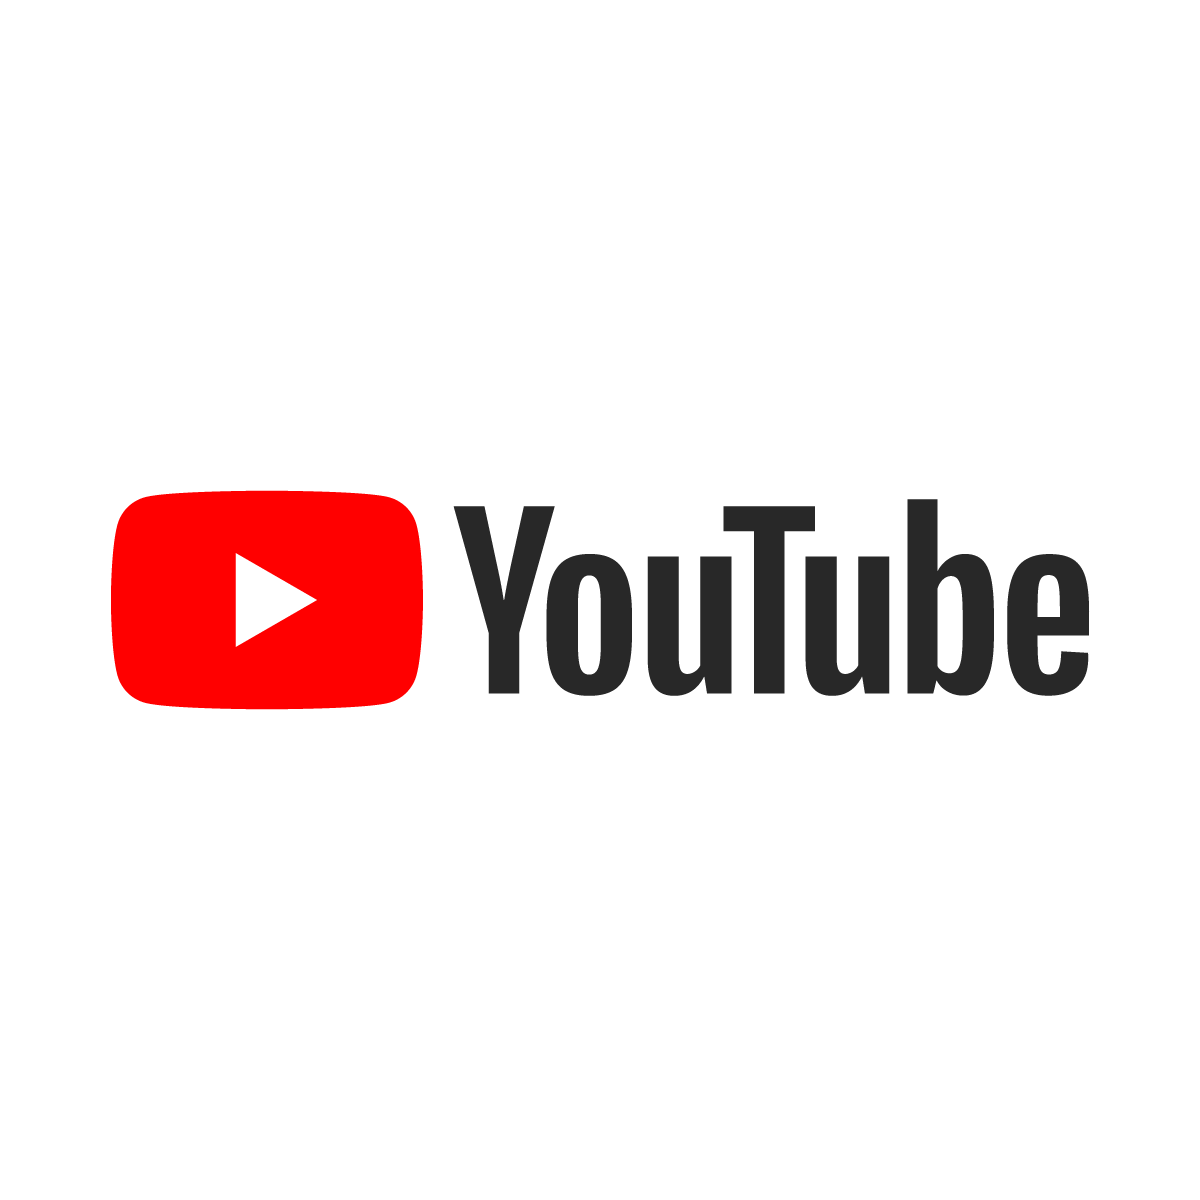 Cách sử dụng YouTube để tăng lưu lượng truy cập và kiếm tiền